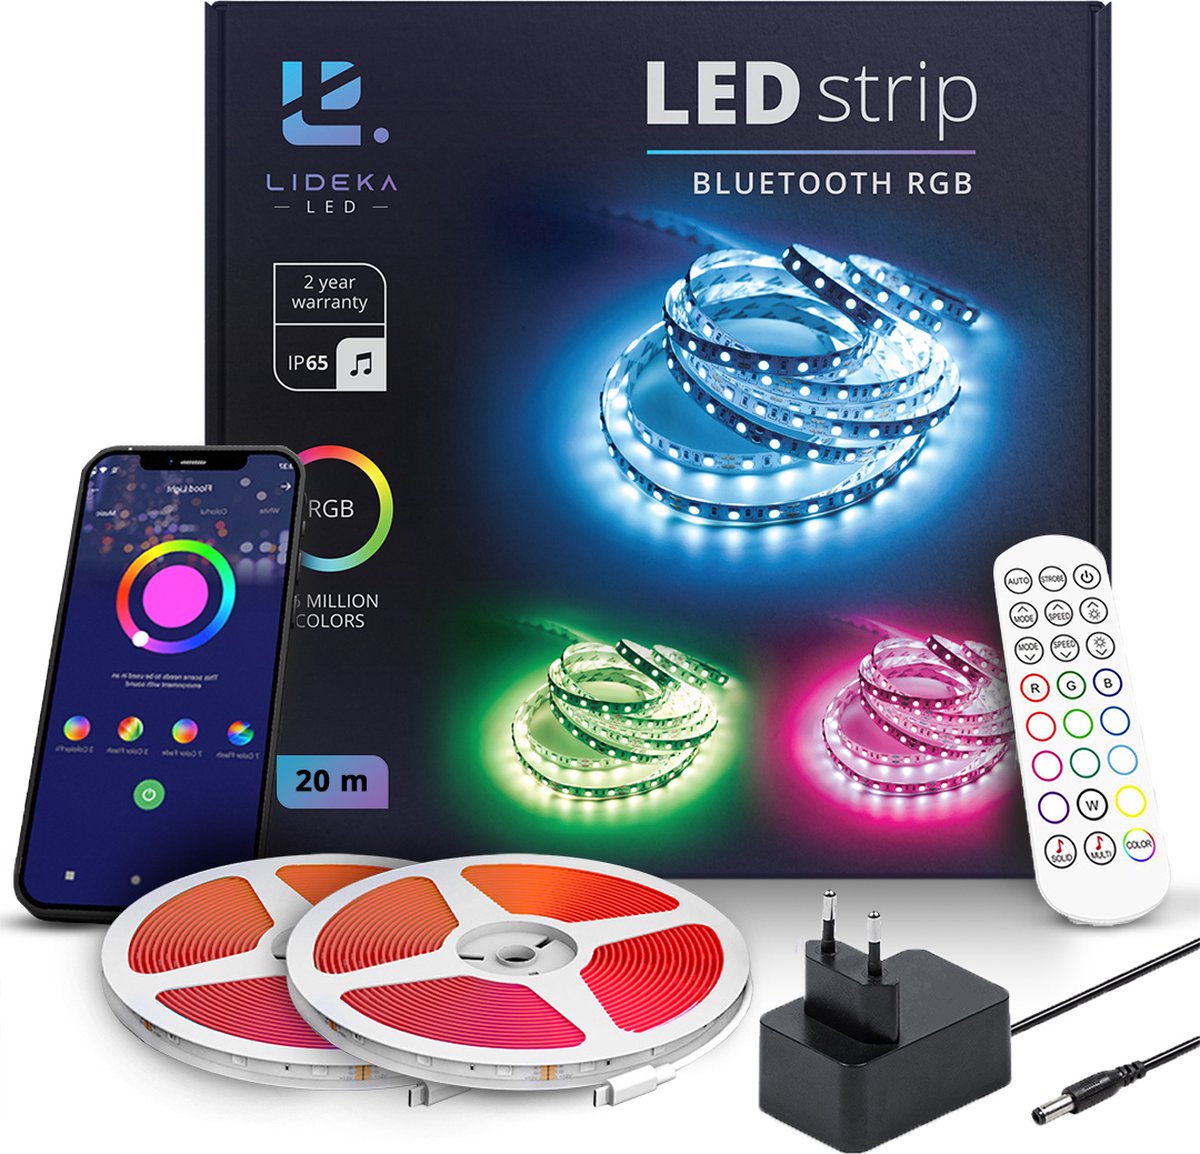 Lideka - LED Strip - 20 meter - RGB verlichting - Dimbaar - Met Afstandsbediening - Zelfklevend - Multi color